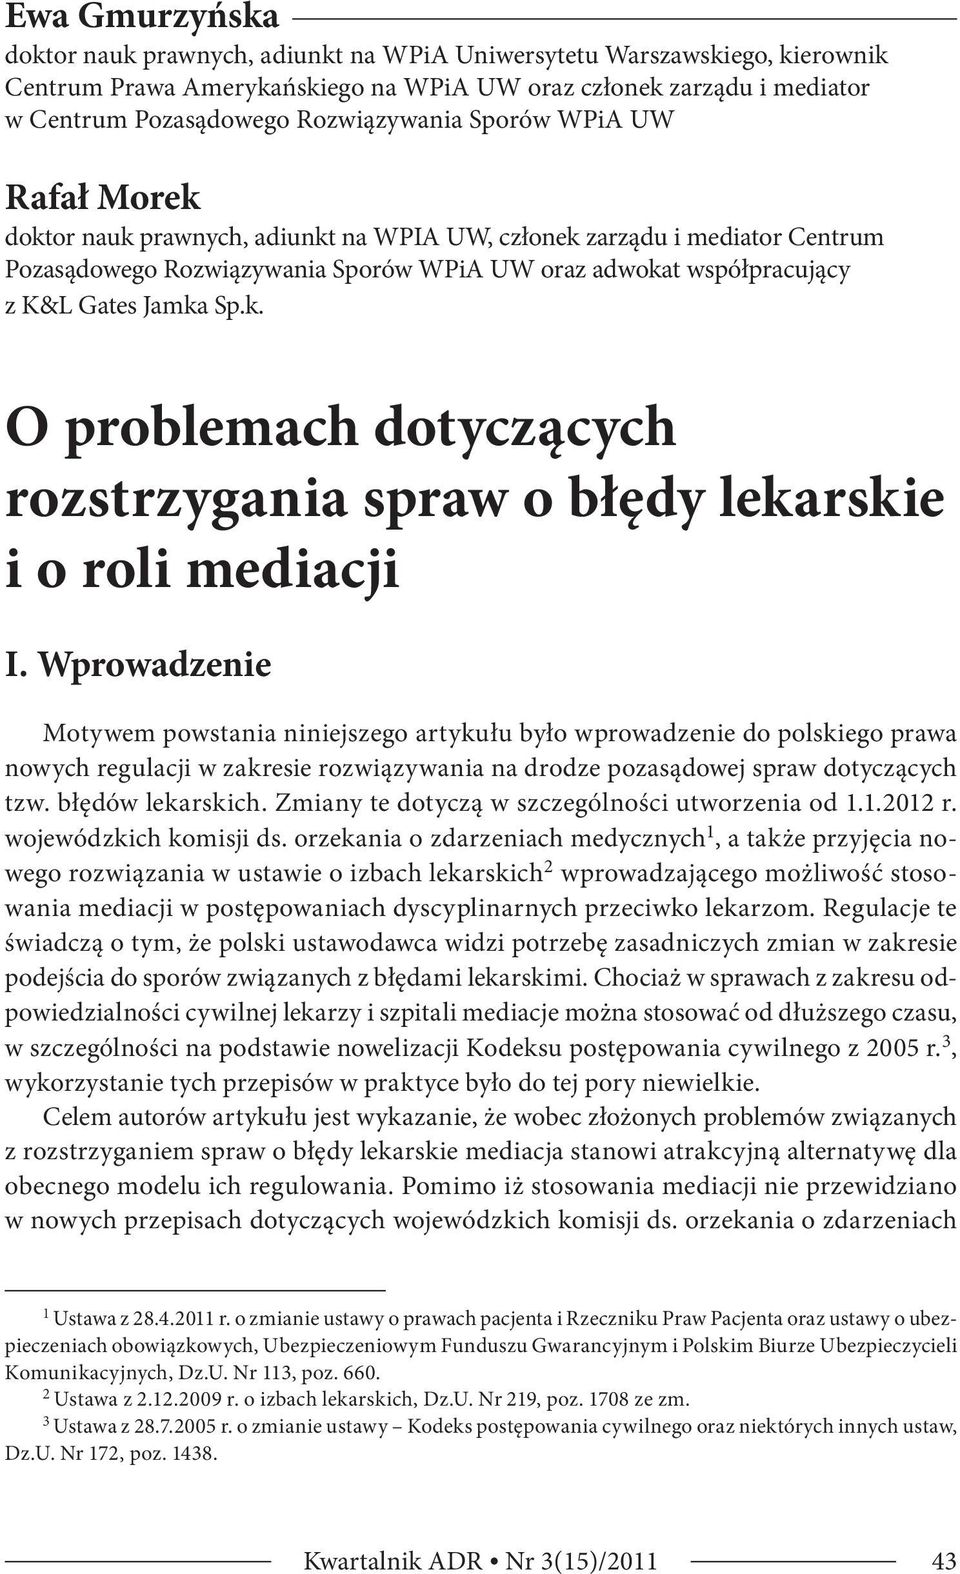 Wprowadzenie Motywem powstania niniejszego artykułu było wprowadzenie do polskiego prawa nowych regulacji w zakresie rozwiązywania na drodze pozasądowej spraw dotyczących tzw. błędów lekarskich.